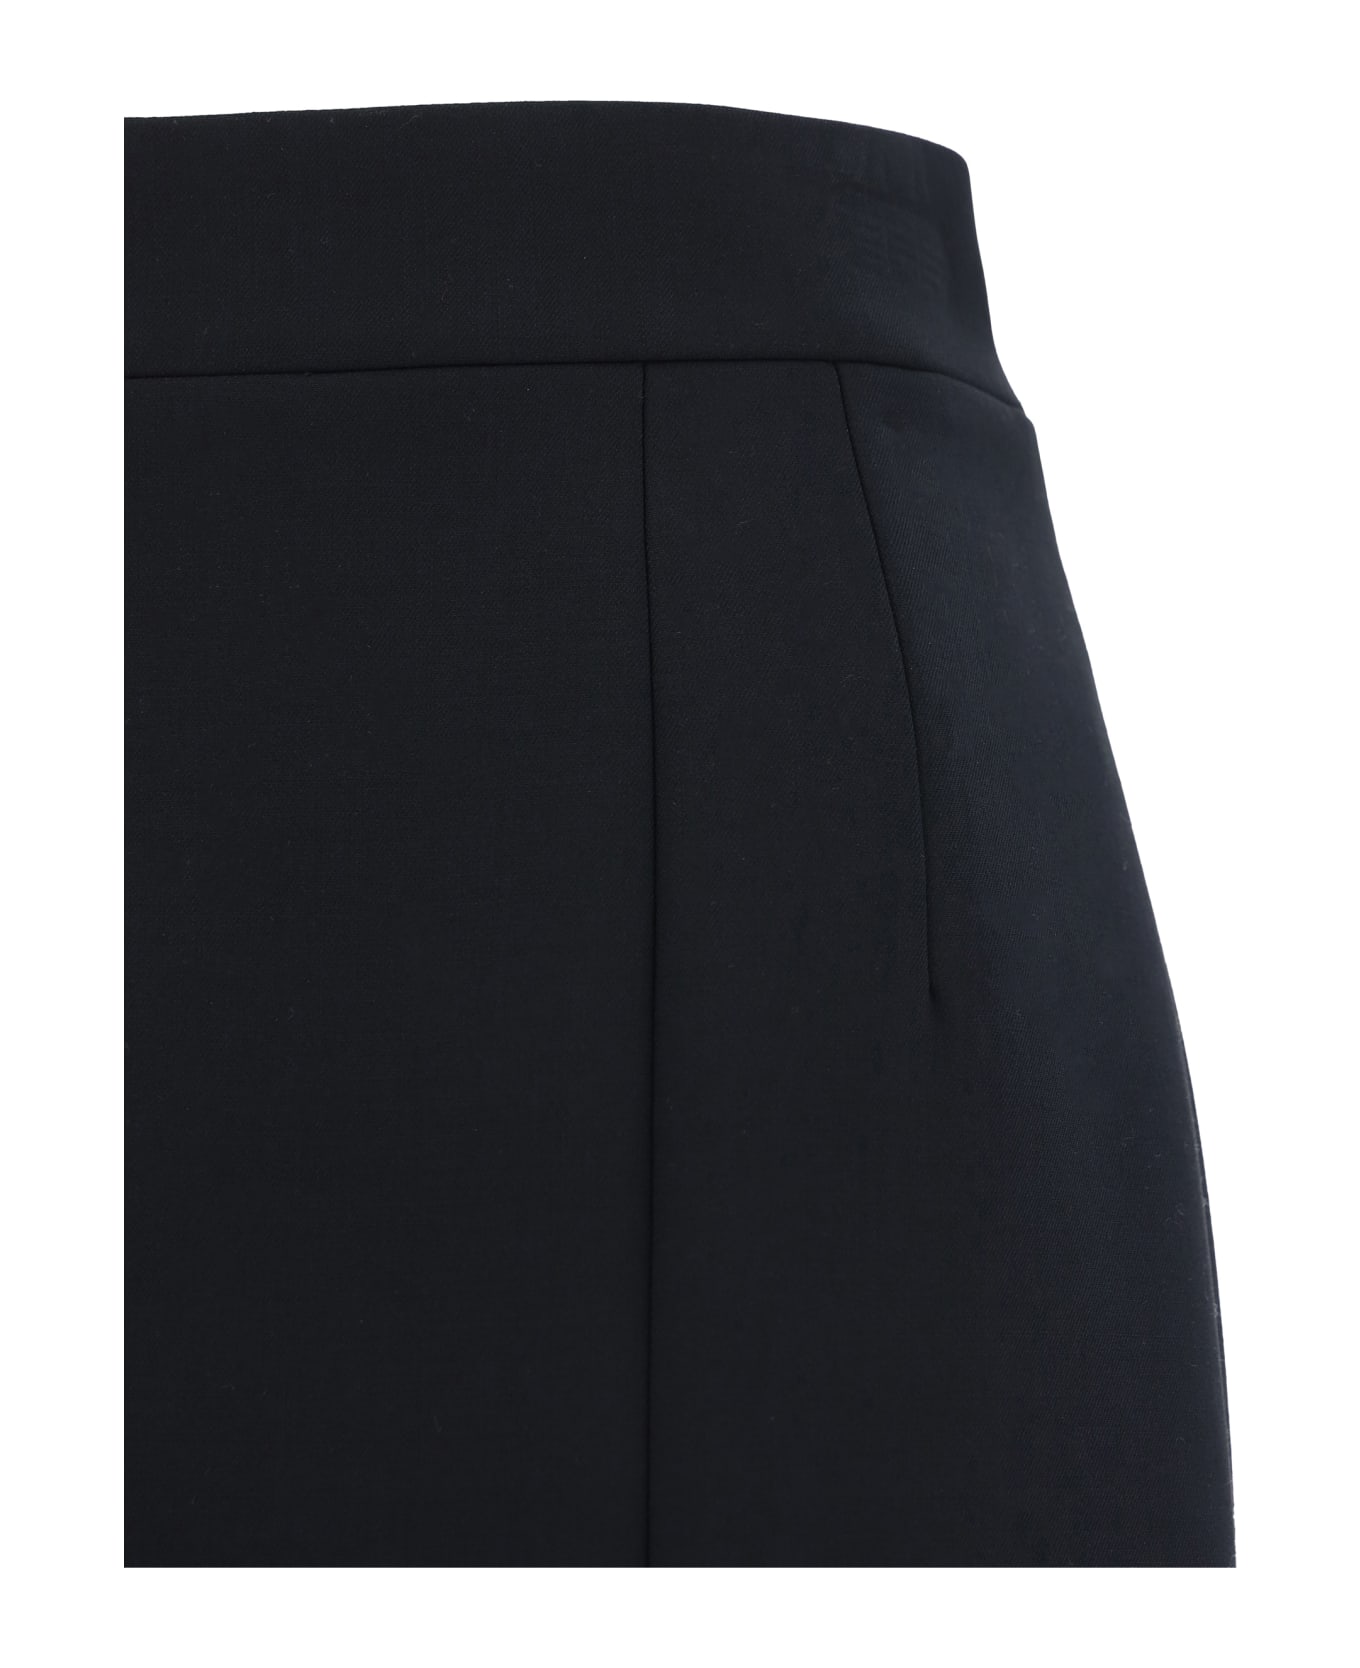 Dolce & Gabbana Skirt - Nero スカート